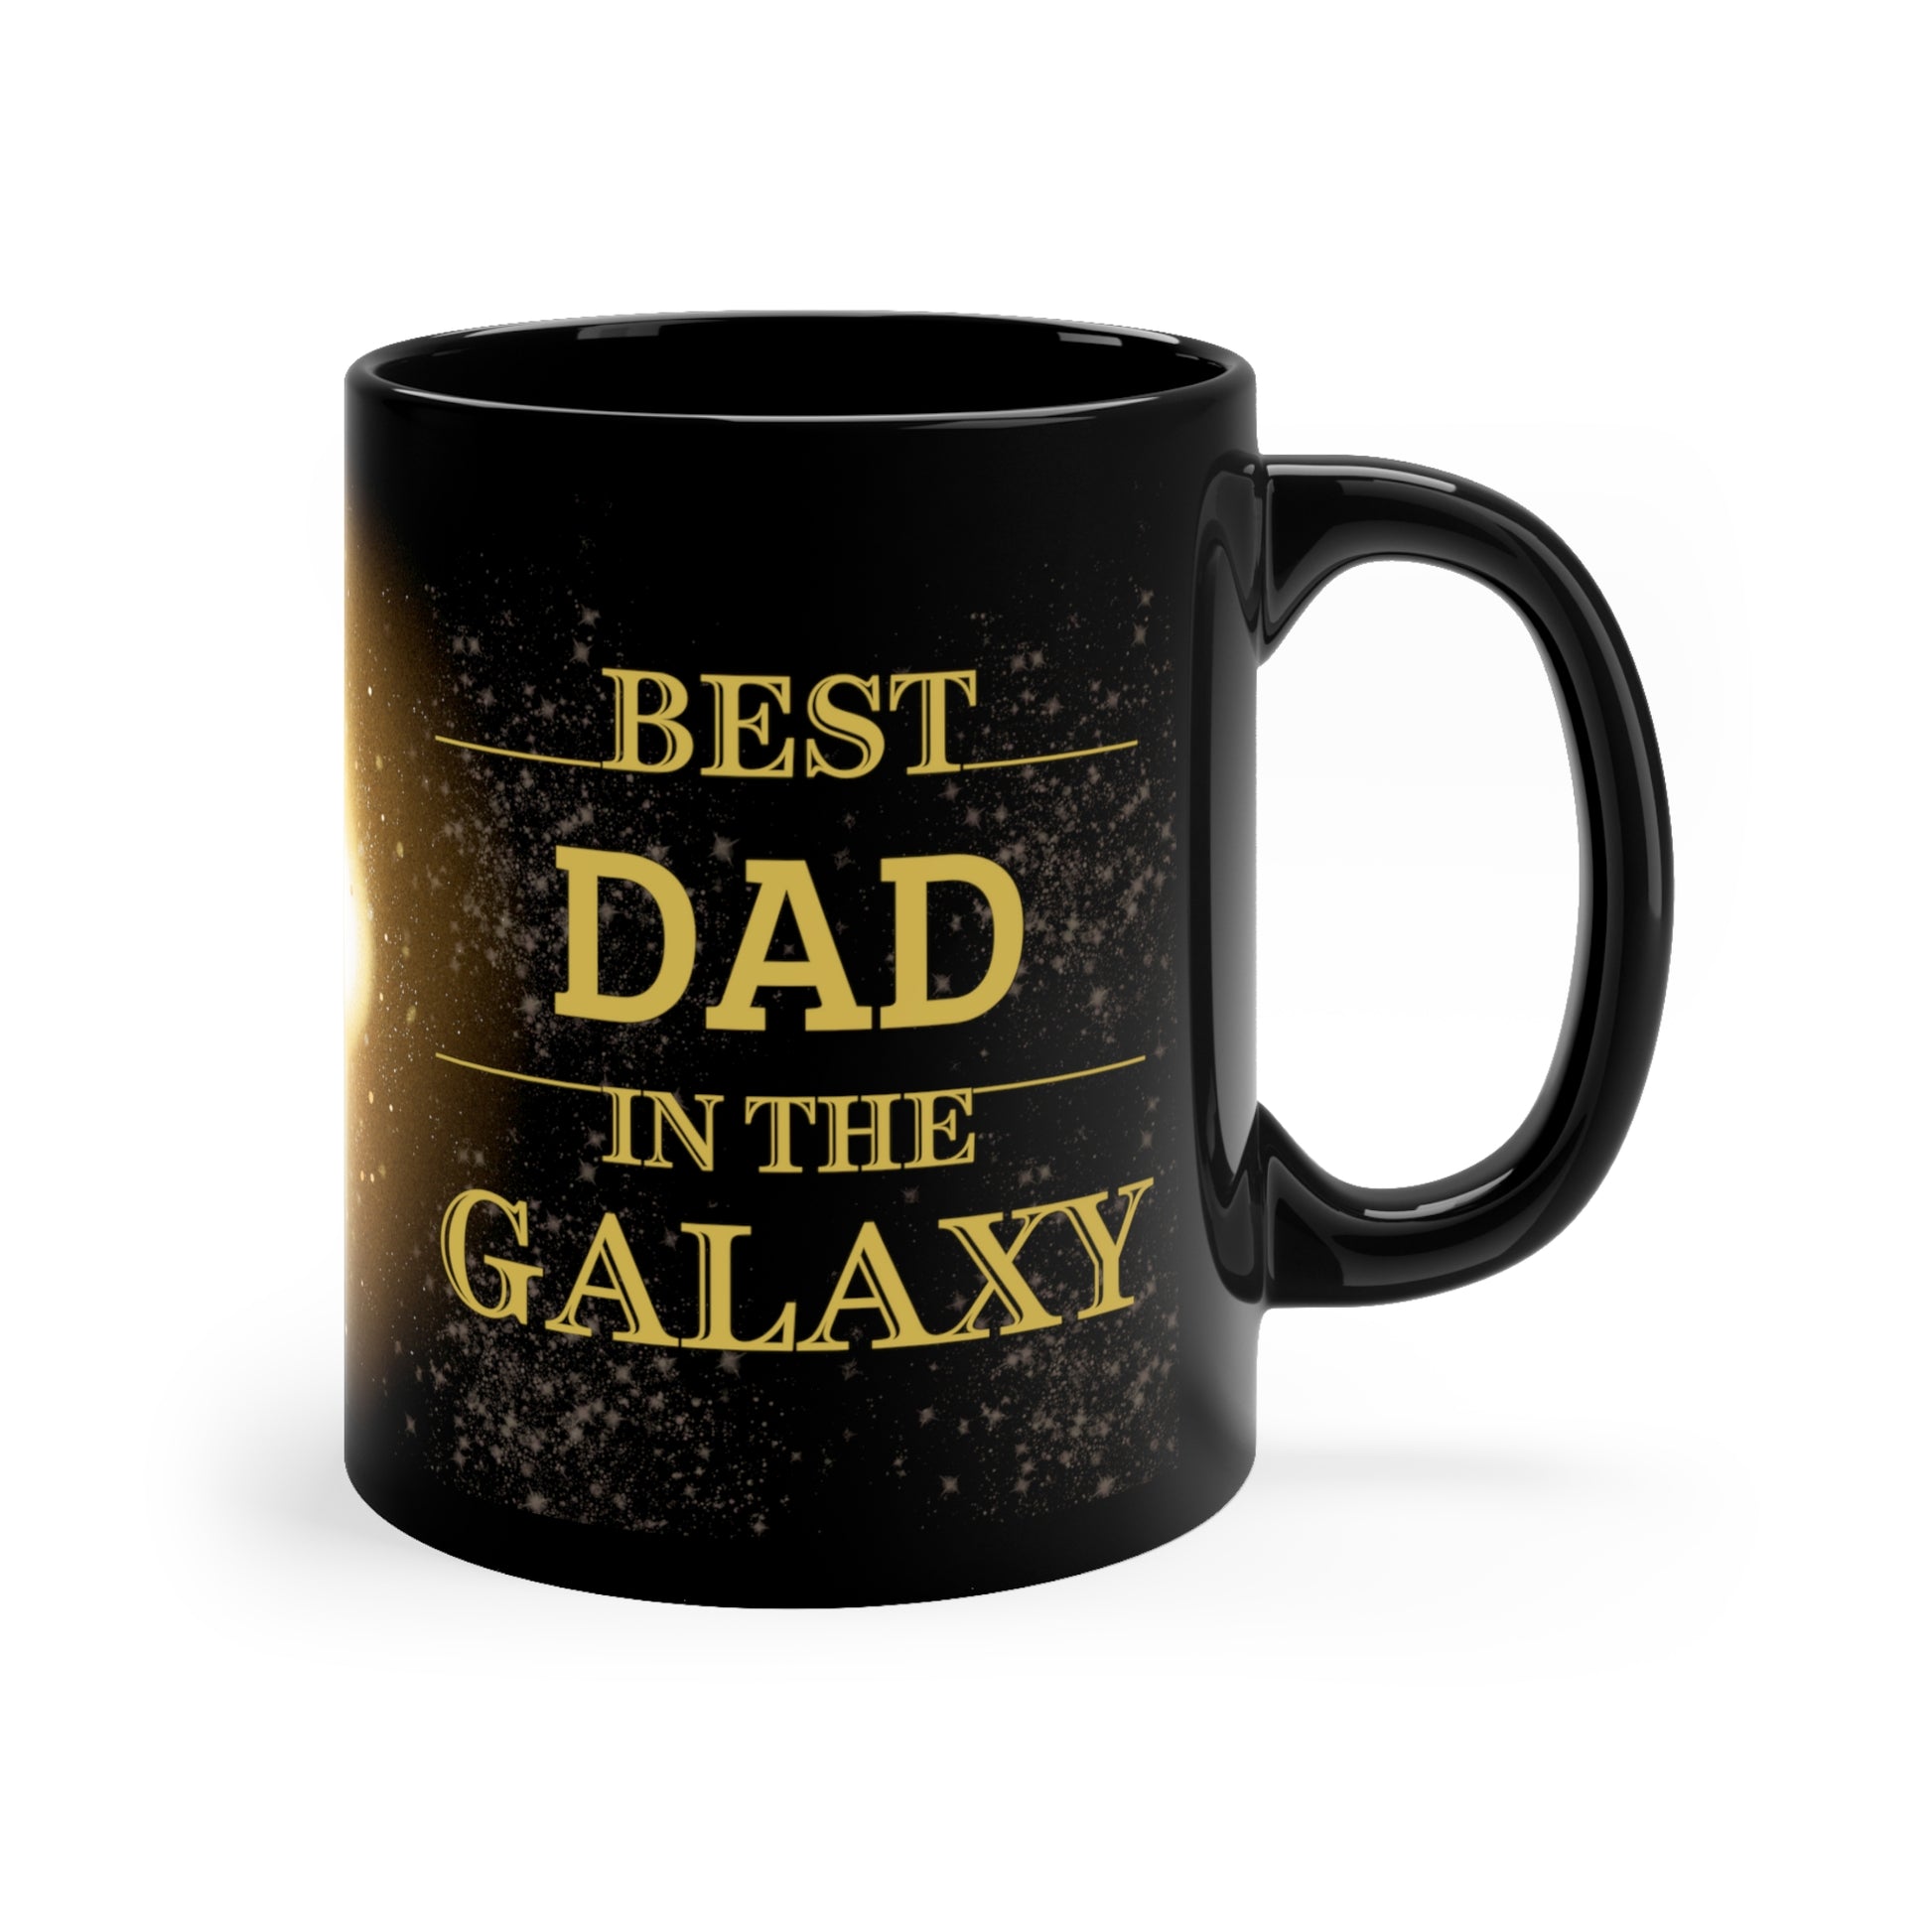 Best Dad In The Galaxy Mug, Best Ever Black Mug